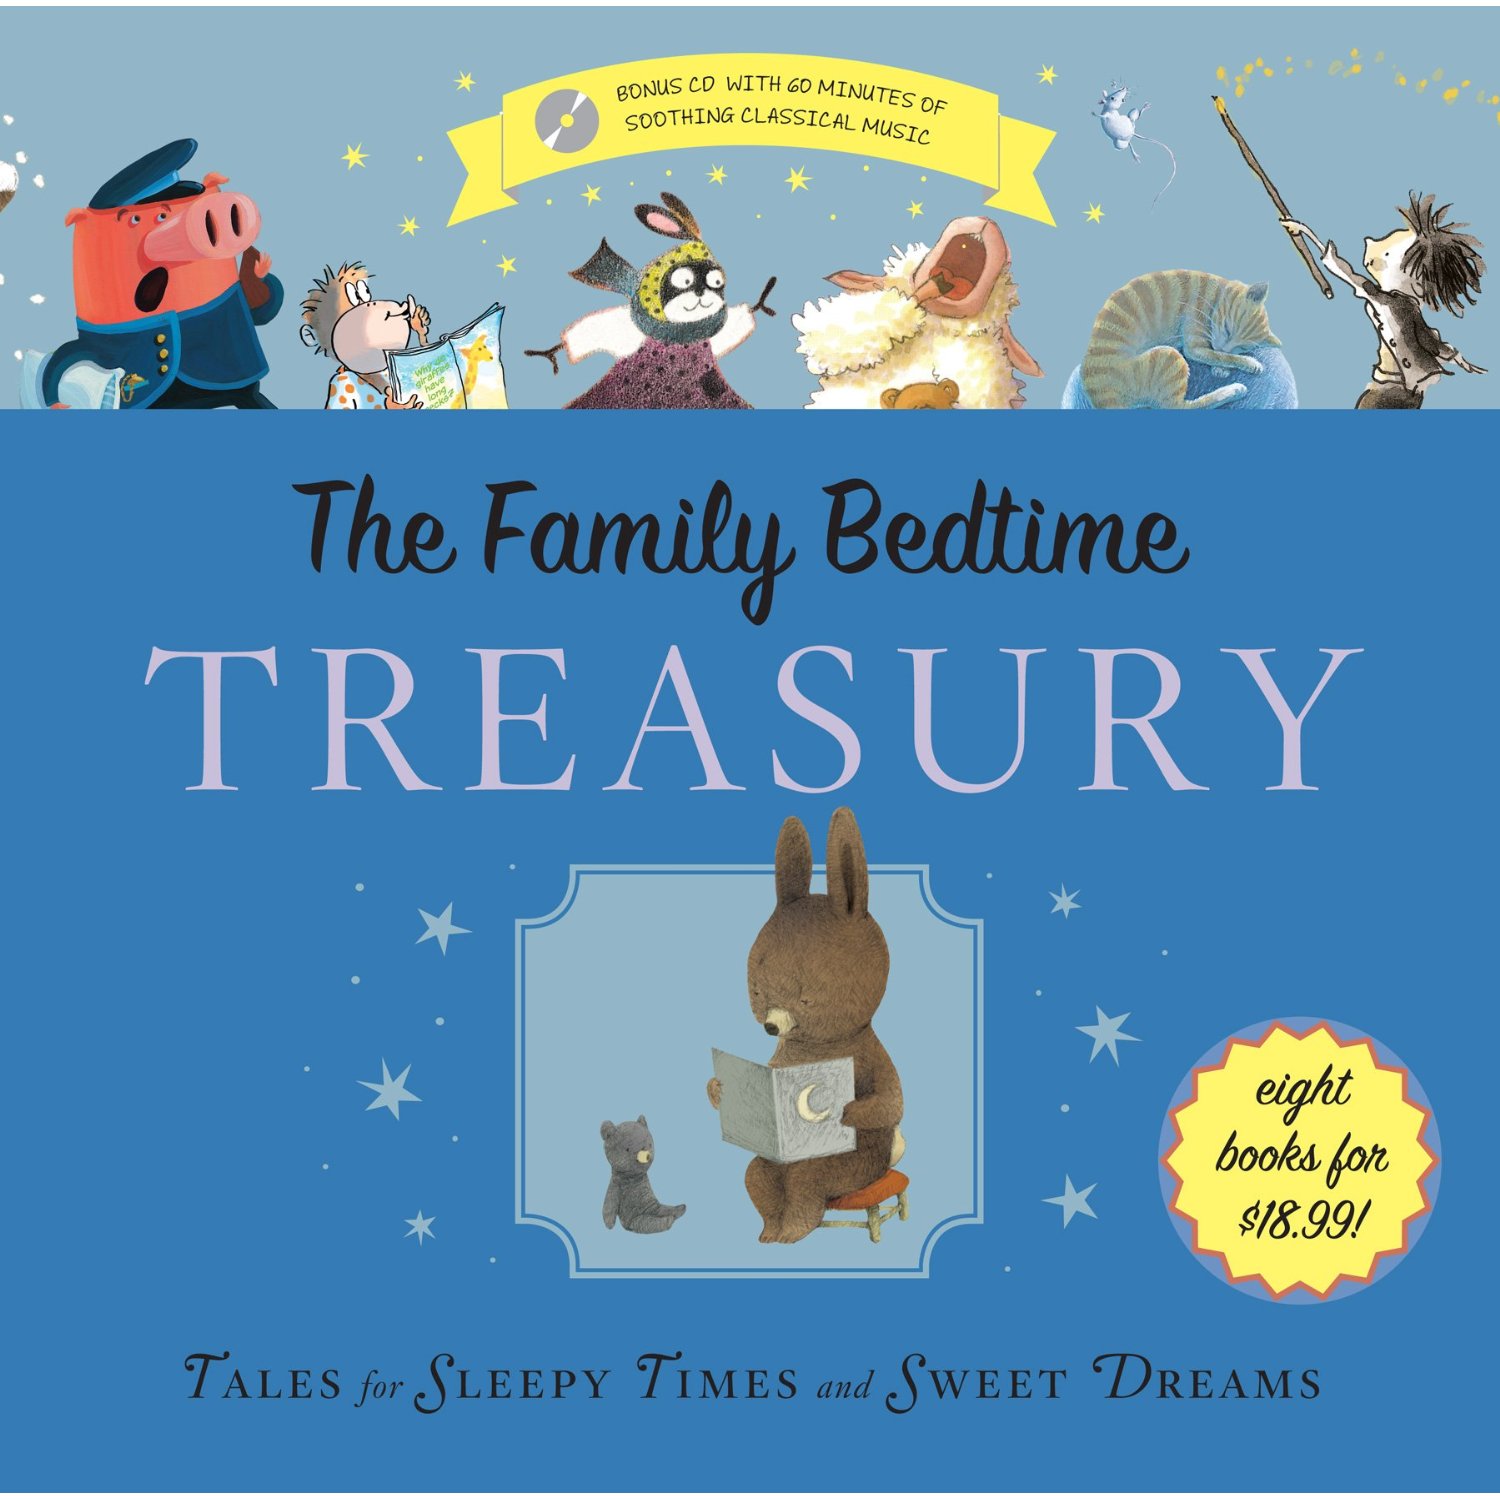 The Family Bedtime Treasury